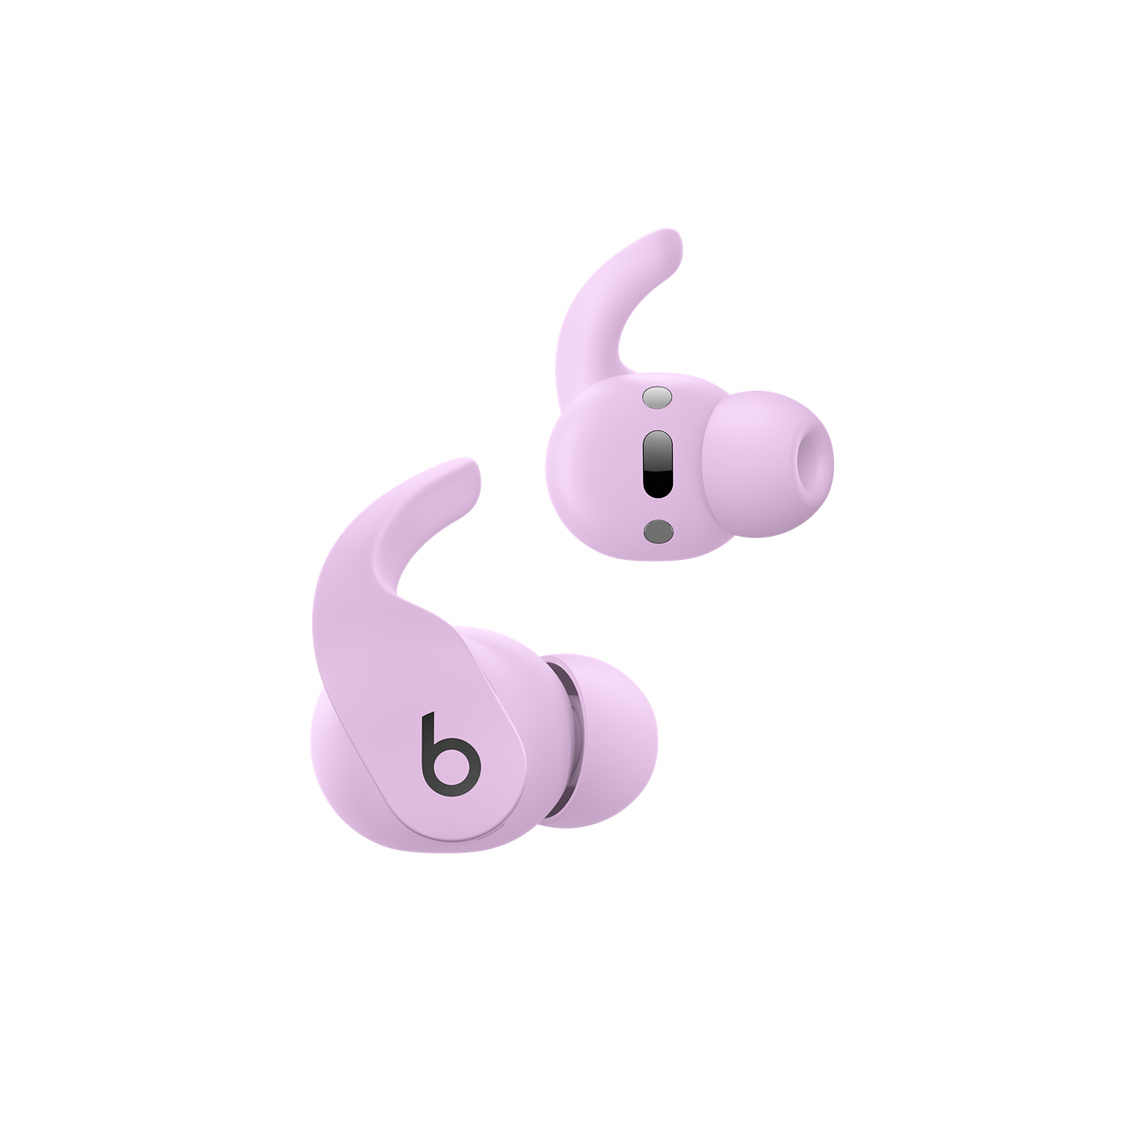 冰晶紫 Beats Fit Pro 真無線入耳式耳機，展示耳機上操控鈕，可用於管理通話並控制音樂 